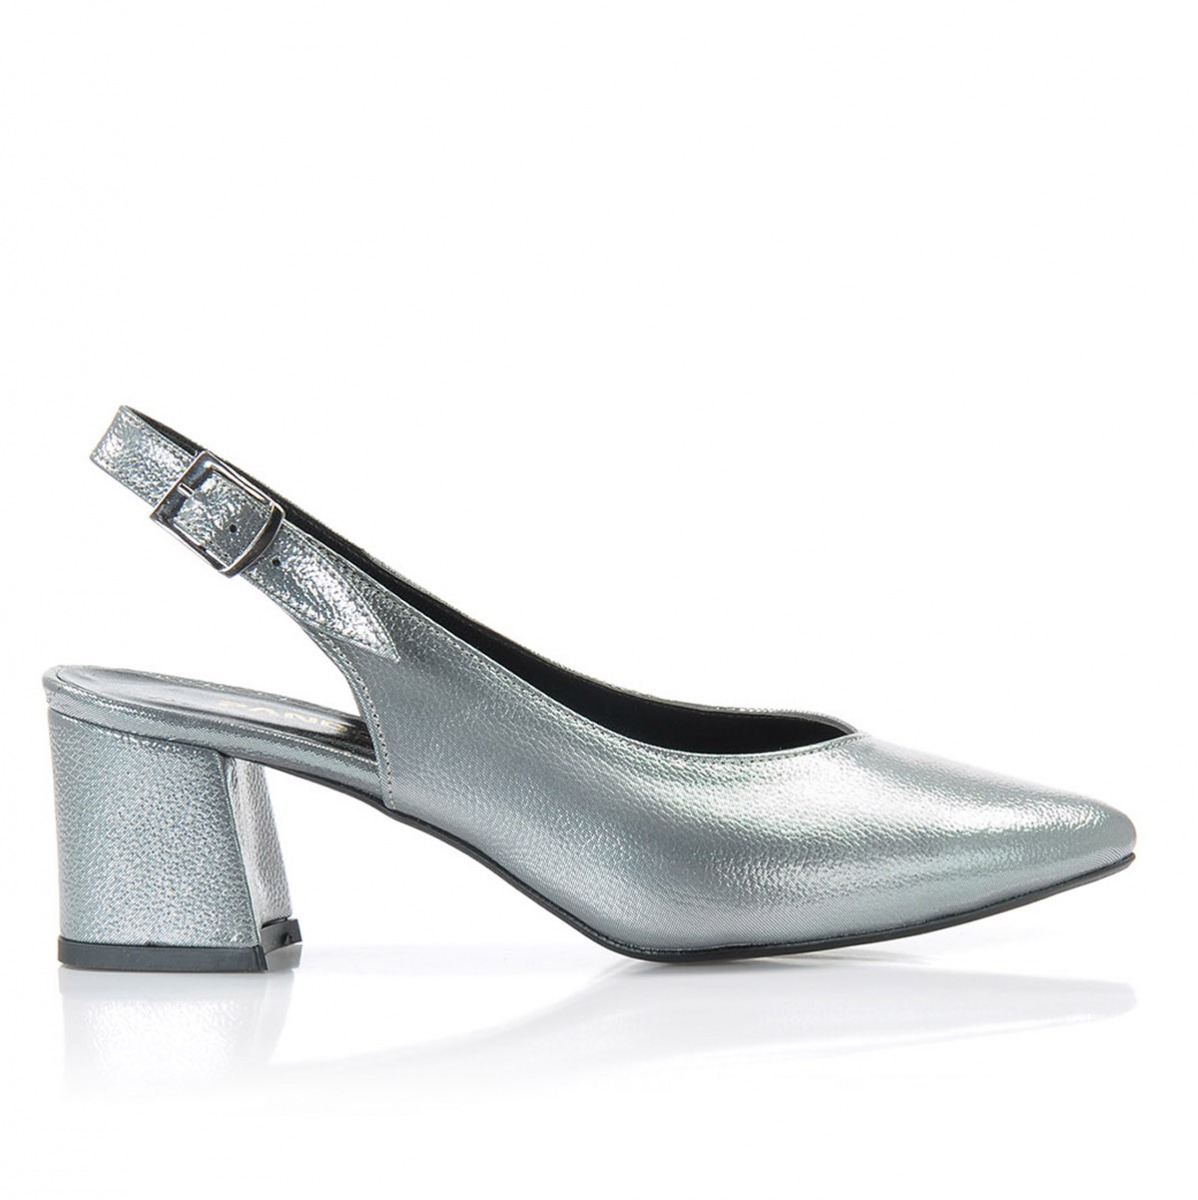 Flo Kadın  Gümüş Klasik Topuklu Ayakkabı VZN-086Y. 2